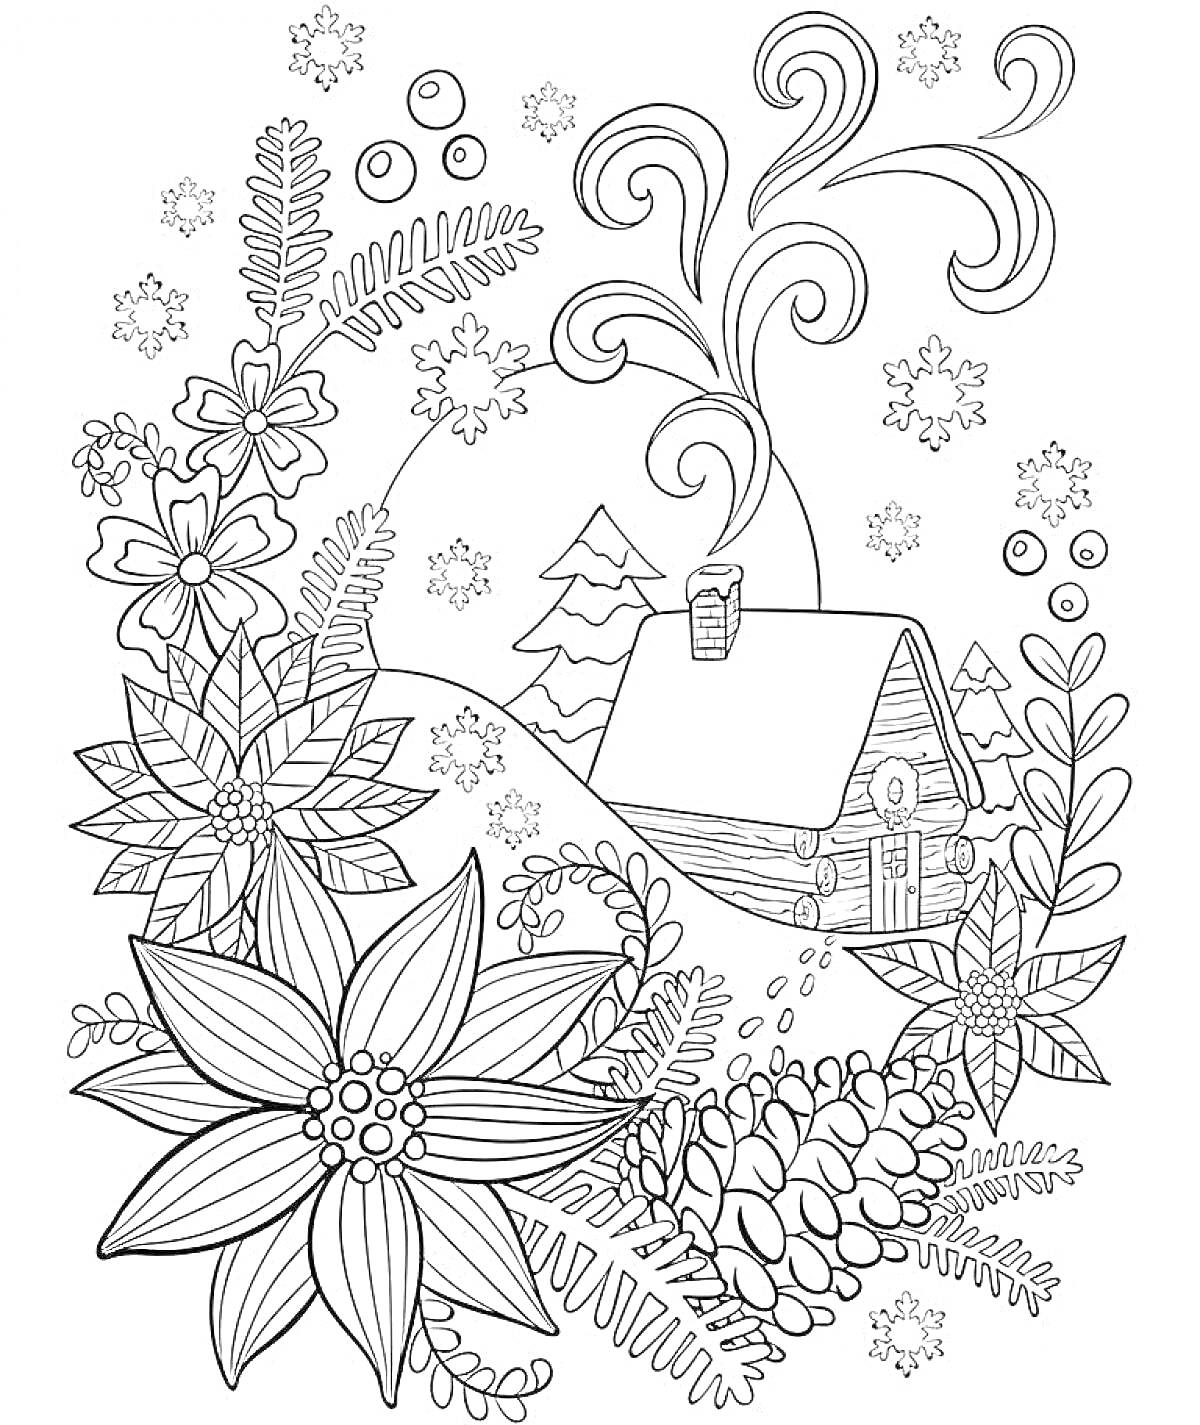 Раскраска Домик в снегу с цветами и елками